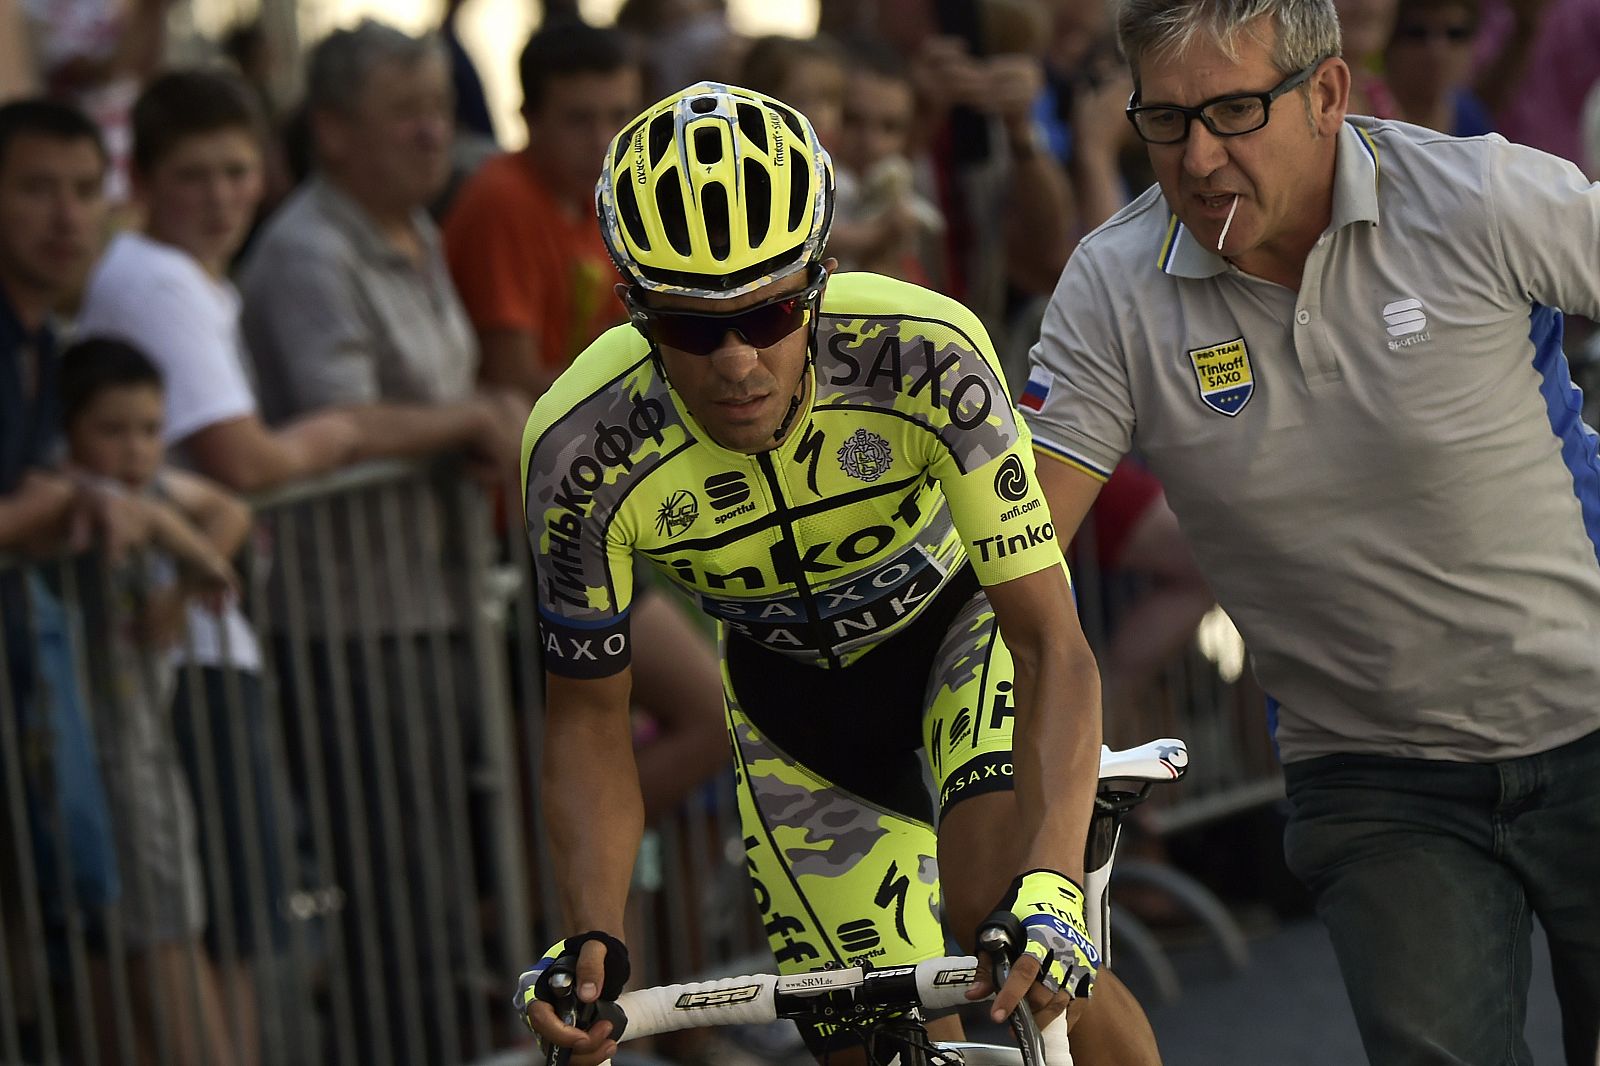 Imagen de Alberto Contador (Tinkoff) durante la décima etapa del Tour de Francia 2015.